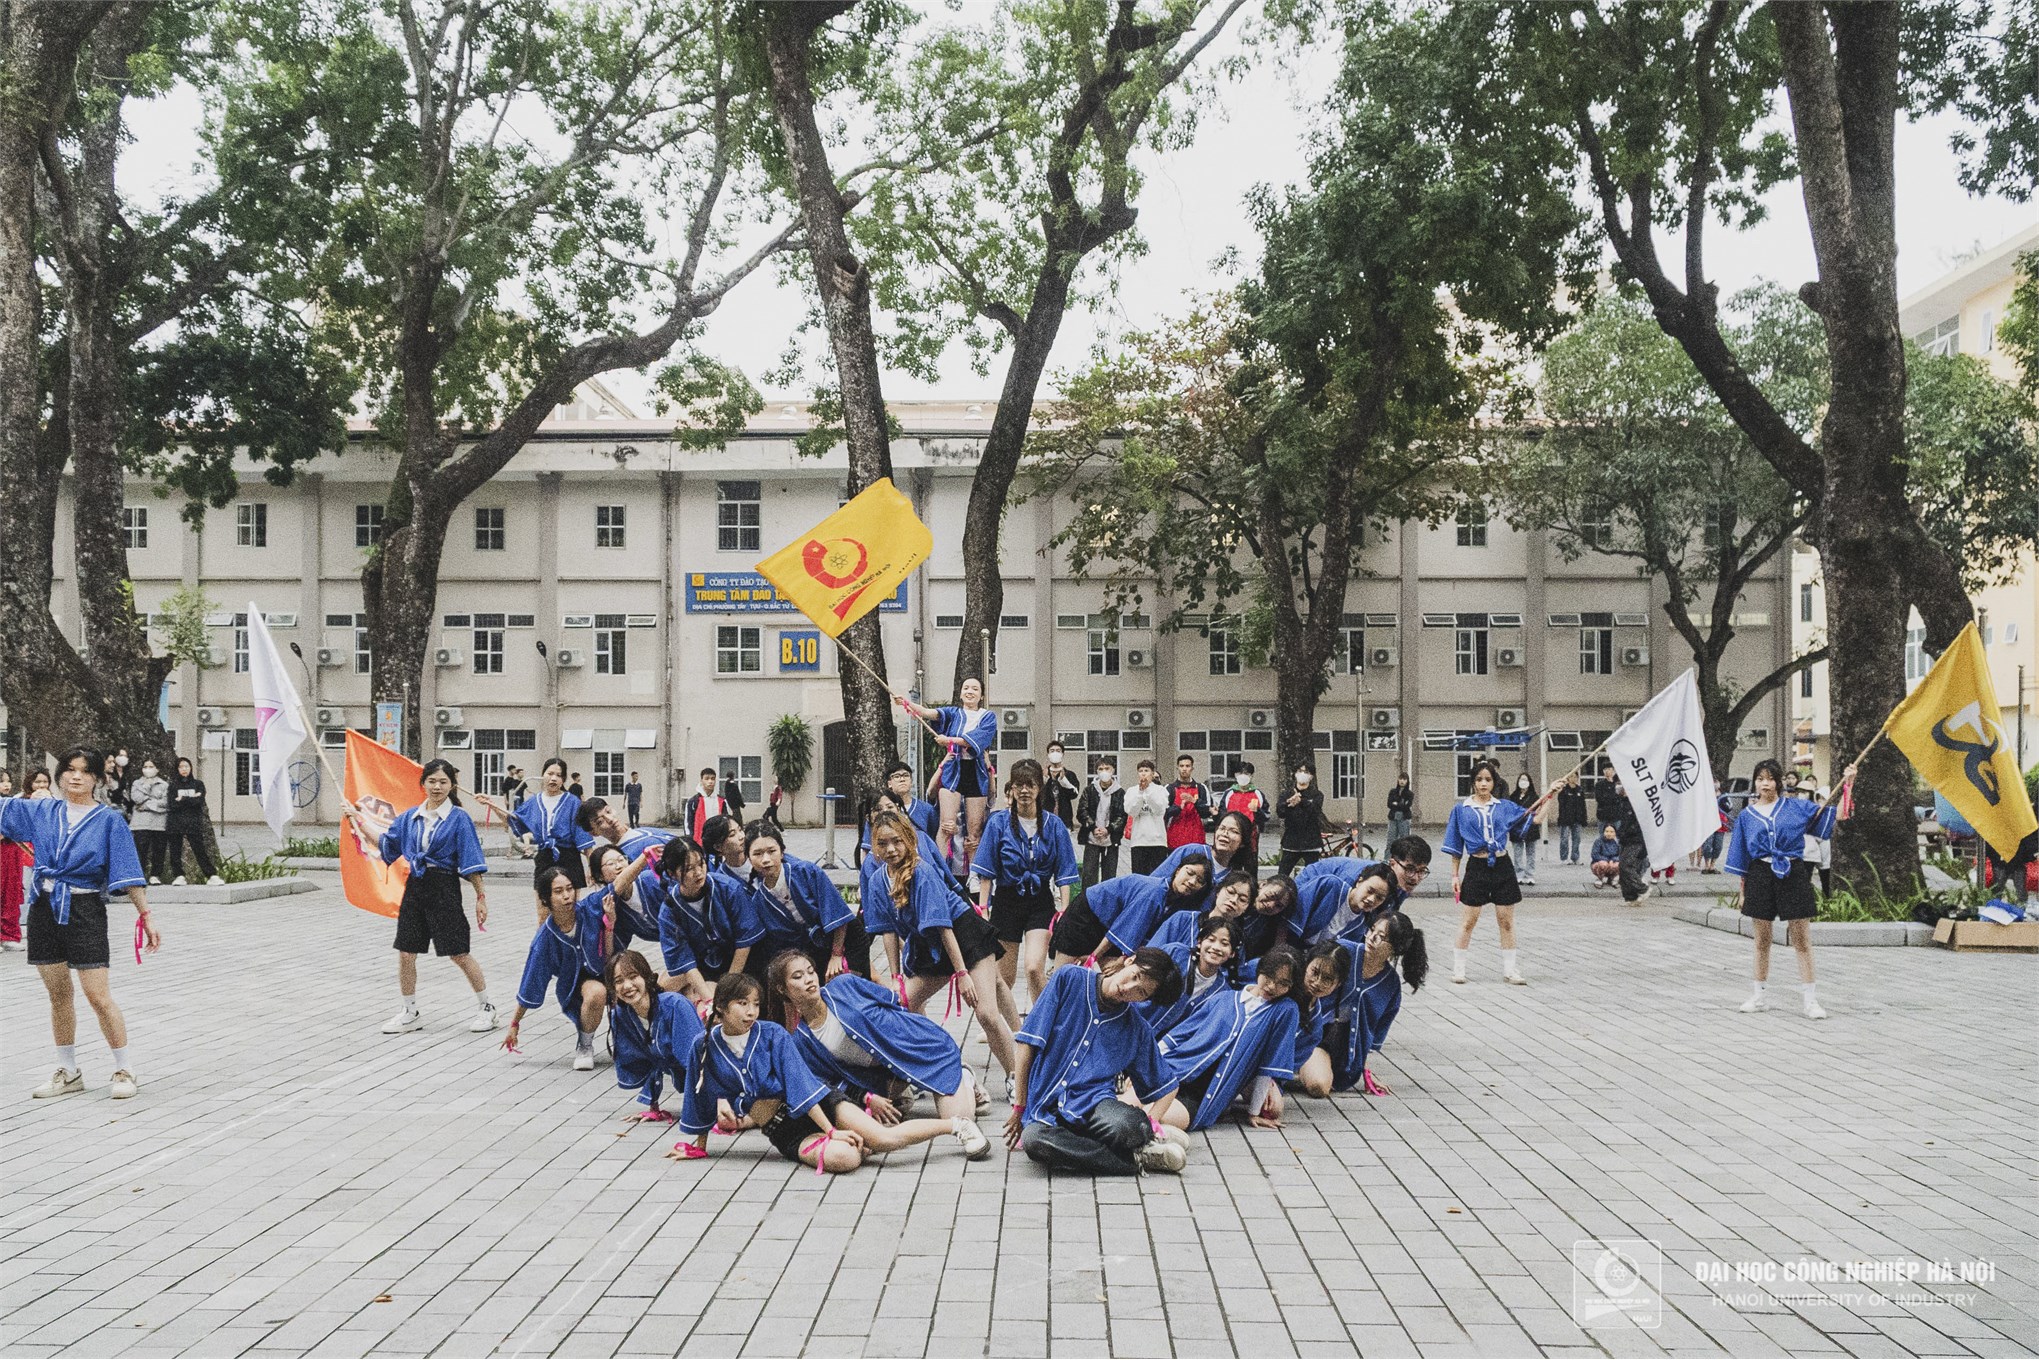 Tân sinh viên Đại học Công nghiệp Hà Nội cháy hết mình cùng Ngày hội HaUI CONNECTION 2023